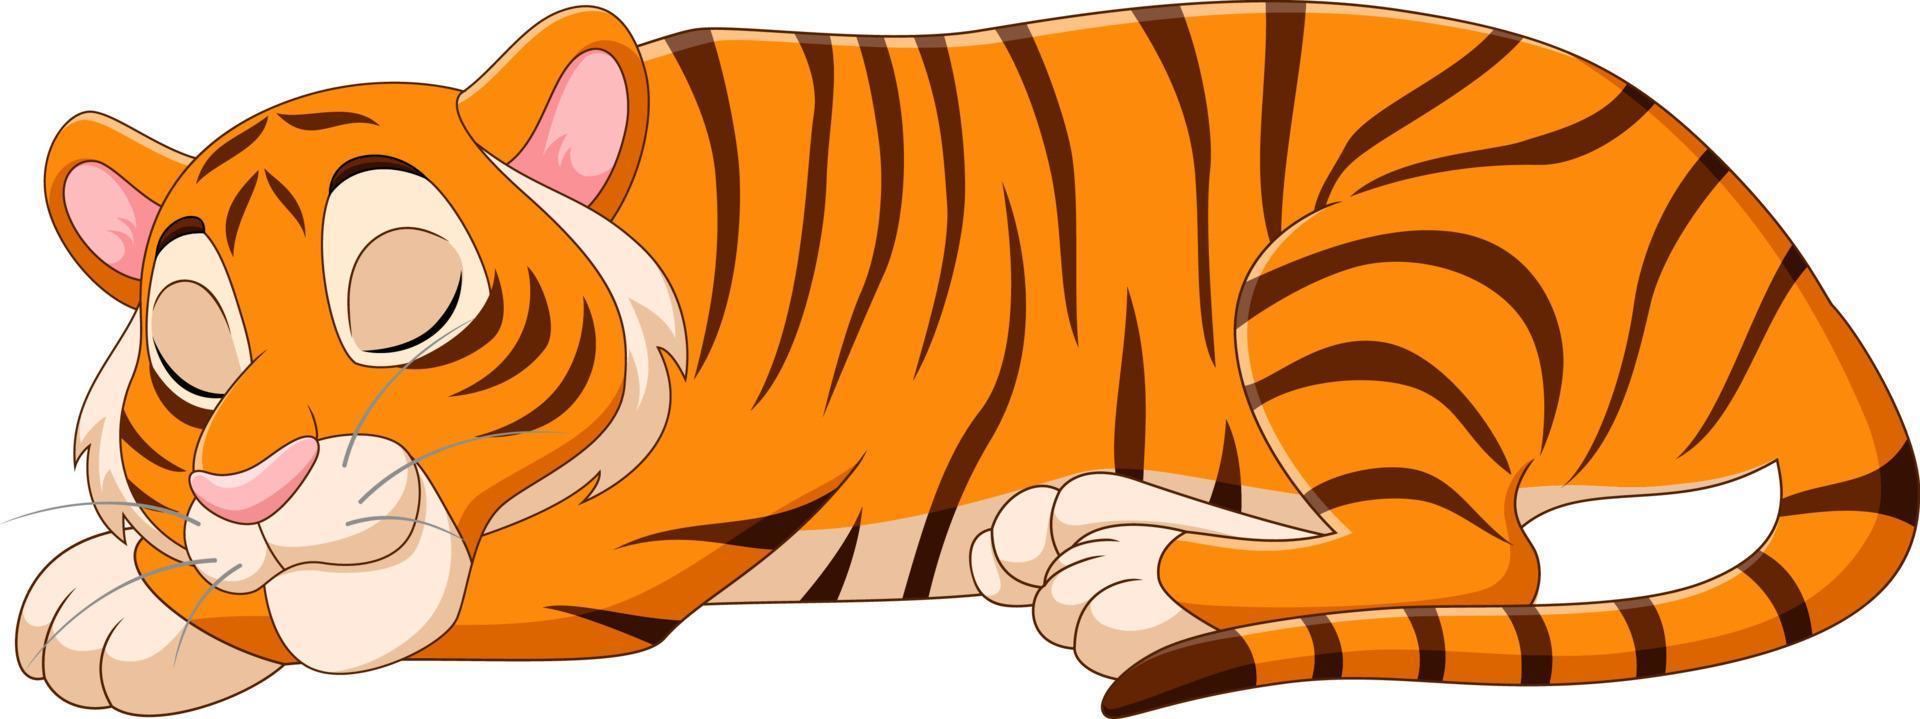 tecknad rolig tiger sover på vit bakgrund vektor